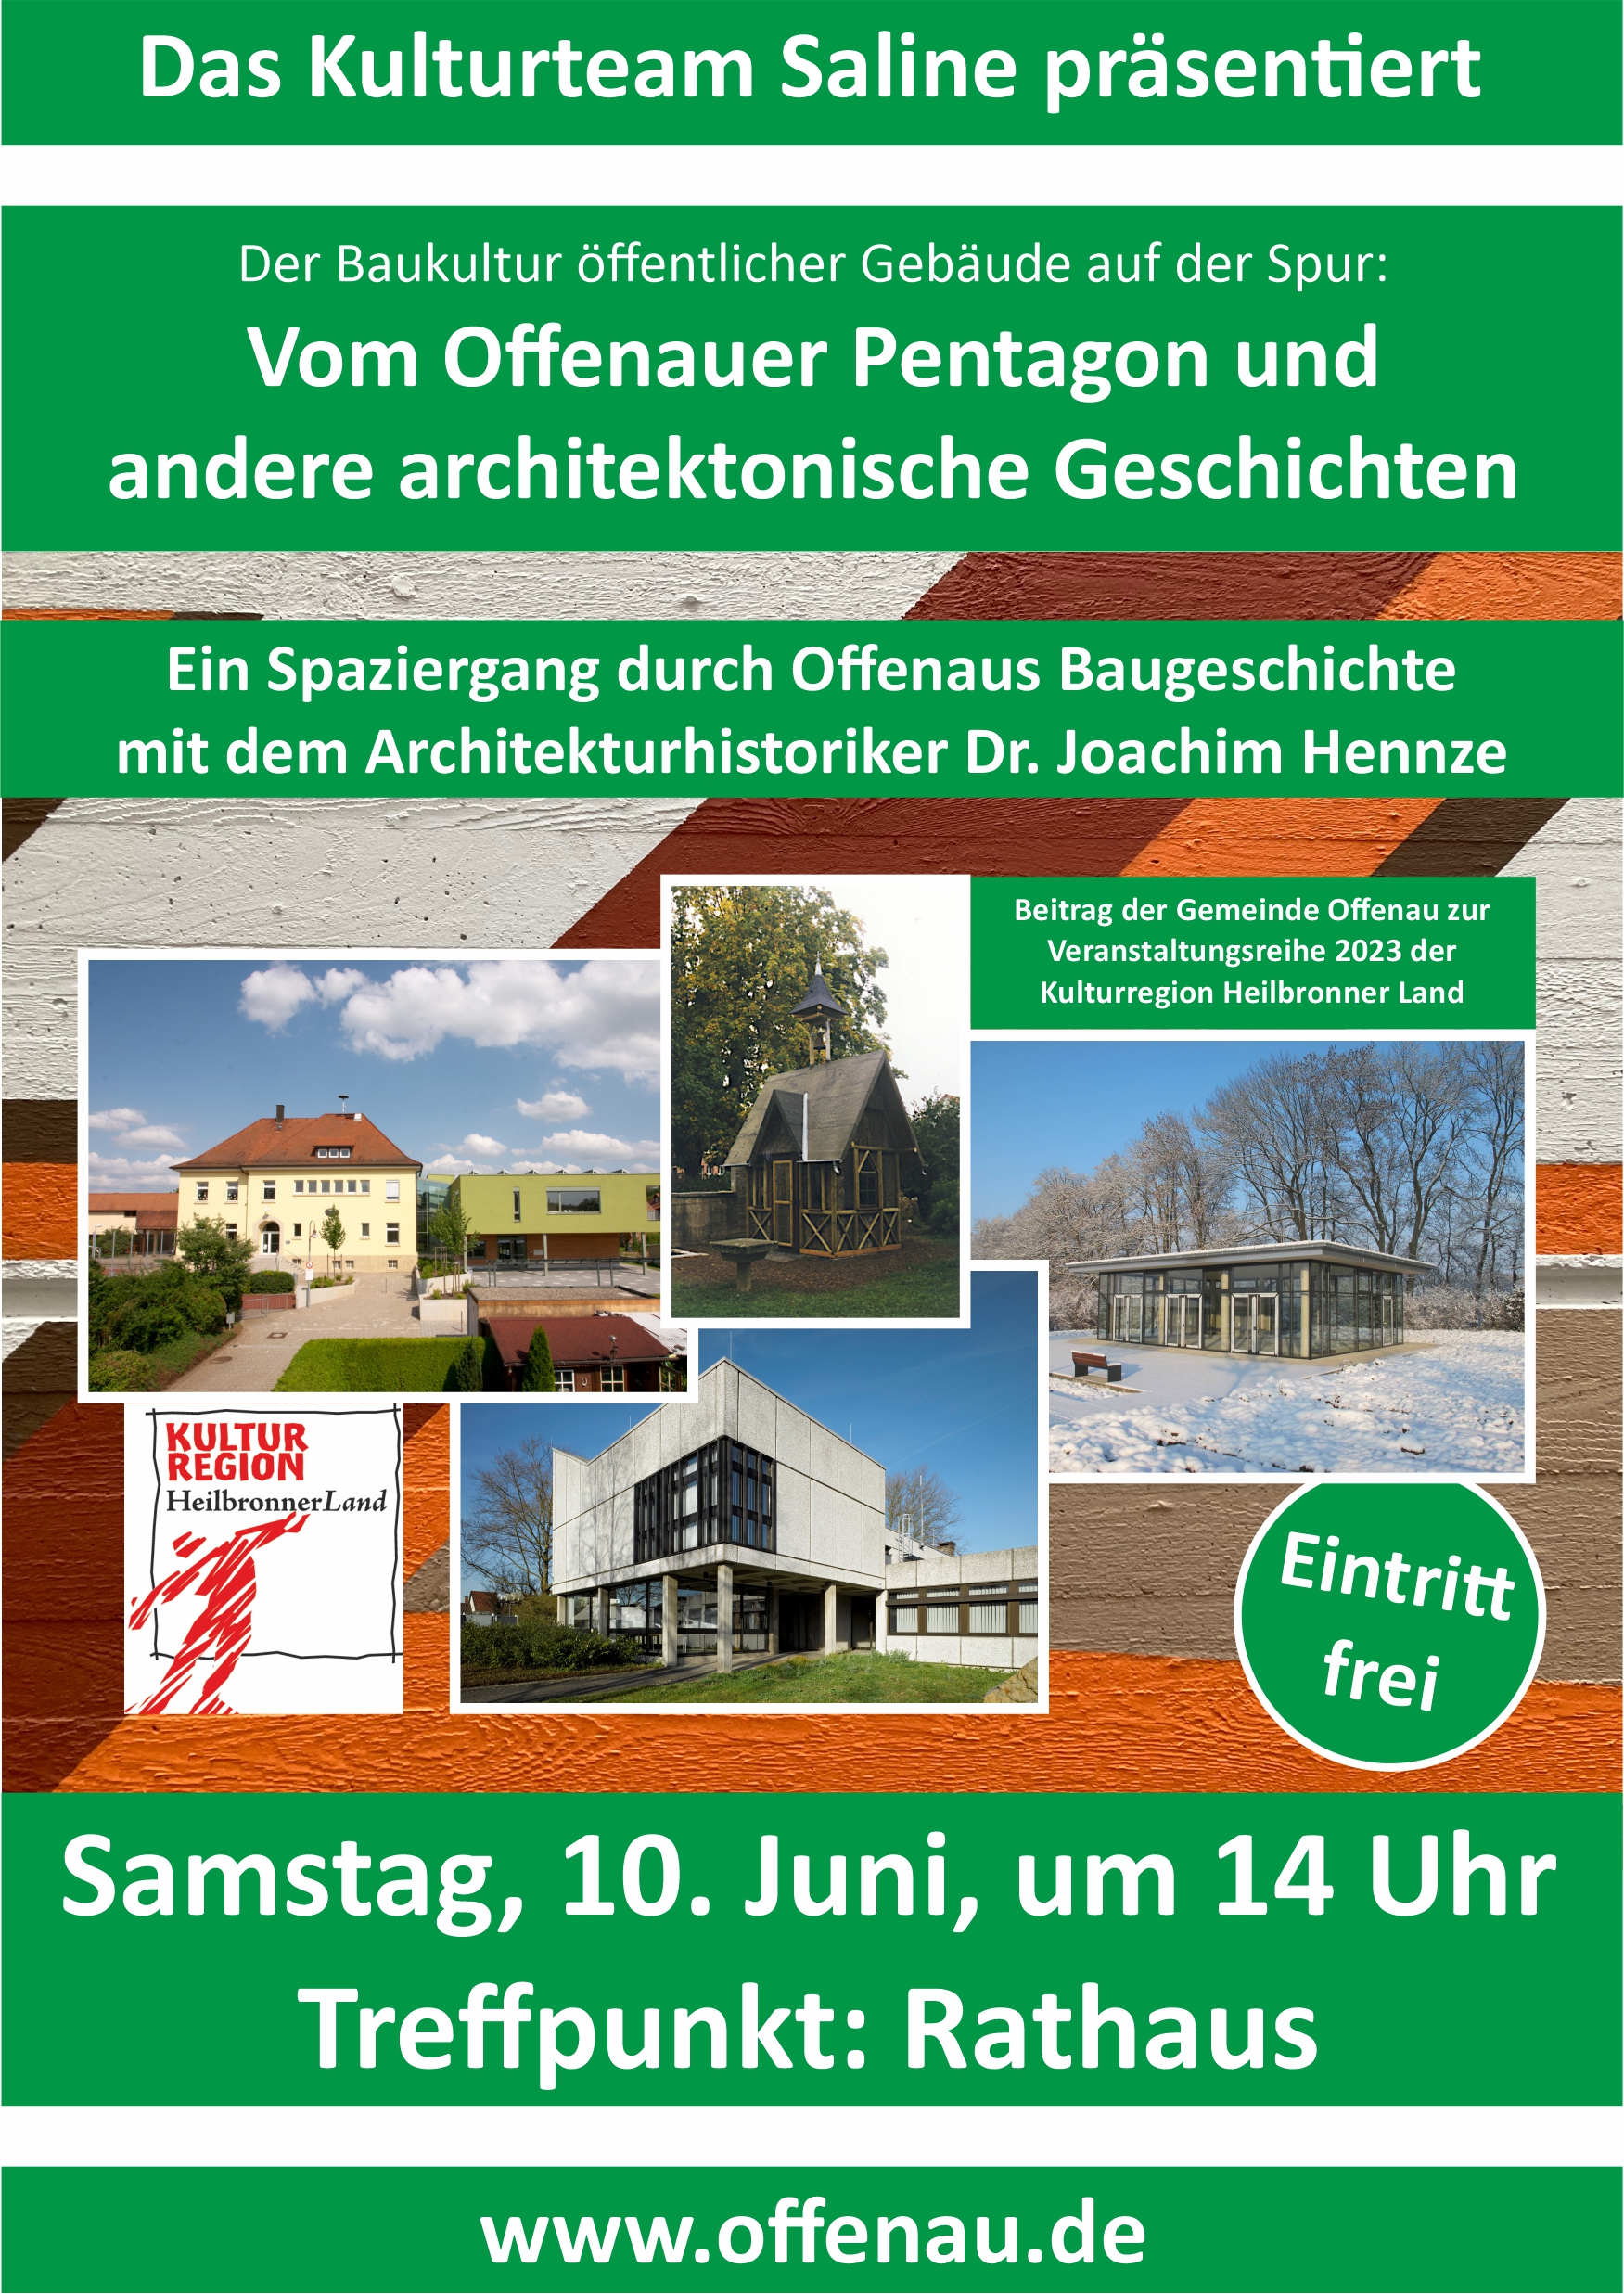 Veranstaltungsplakat zur Führung durch die Offenauer Architekturgeschichte im Rahmen der Projektreihe der Kulturregion Heilbronner Land 2023